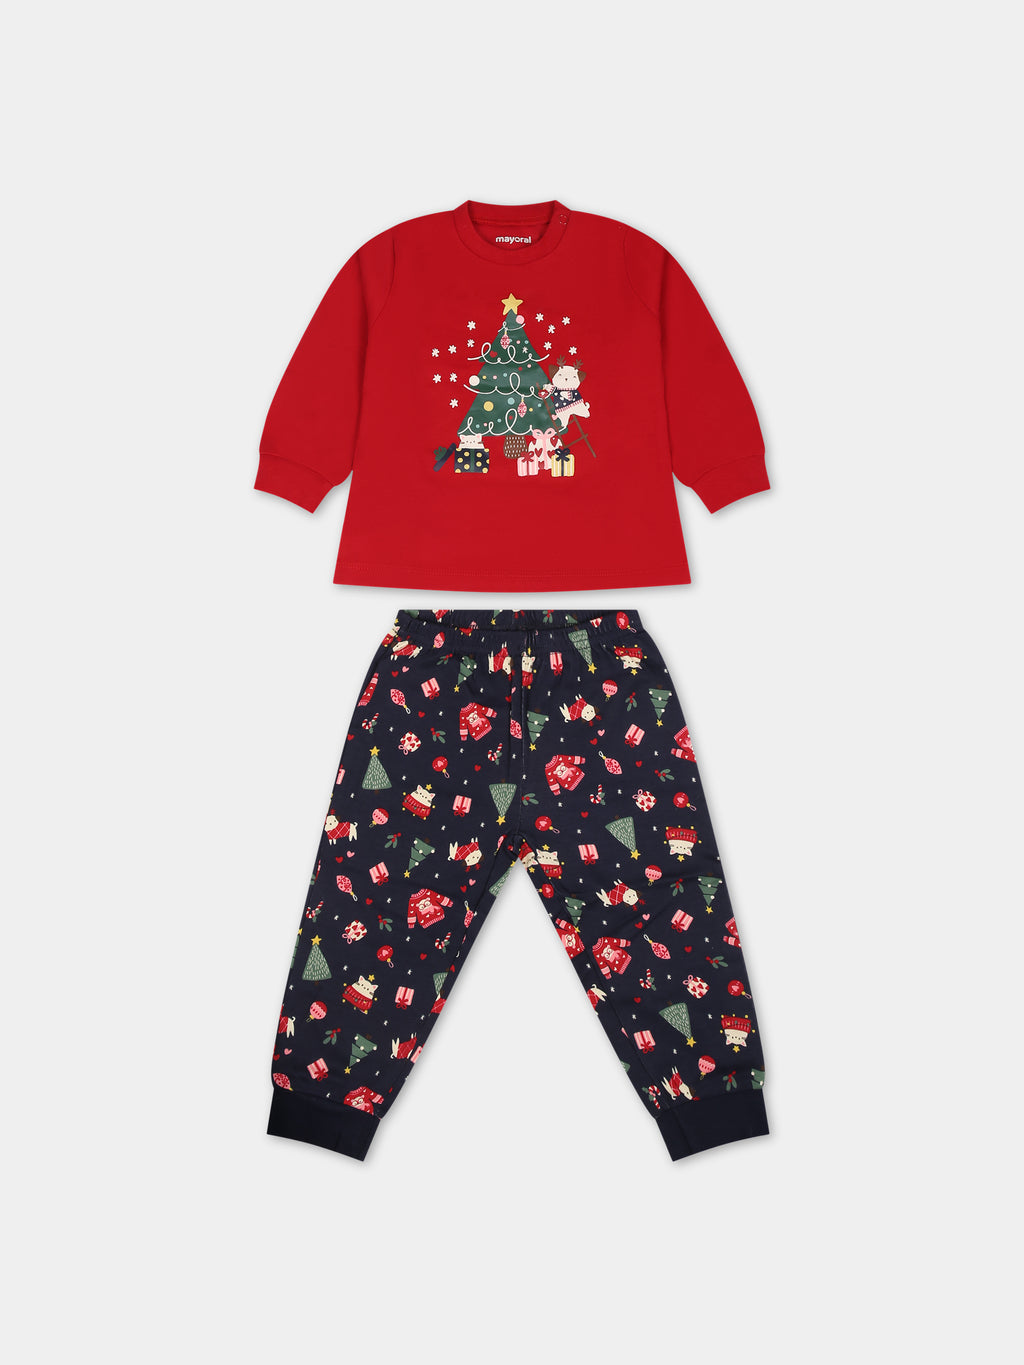 Red pajamas for baby girl with Christmas tree print